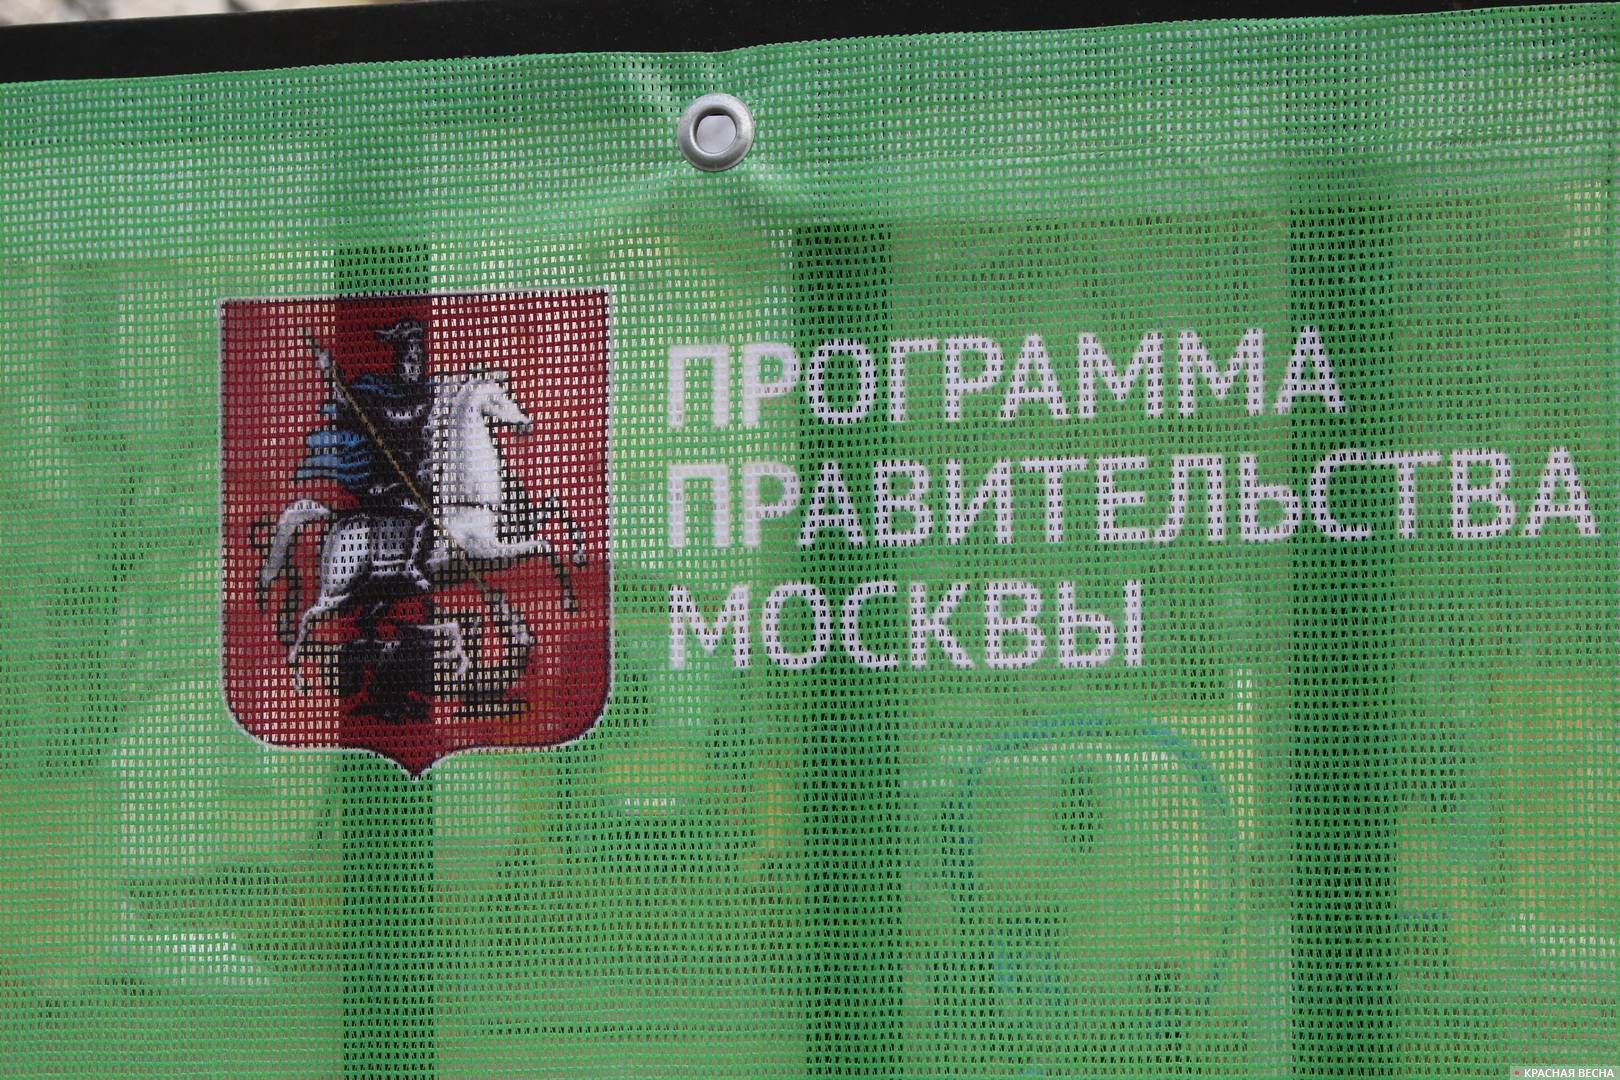  Москва. Забор районной поликлиники